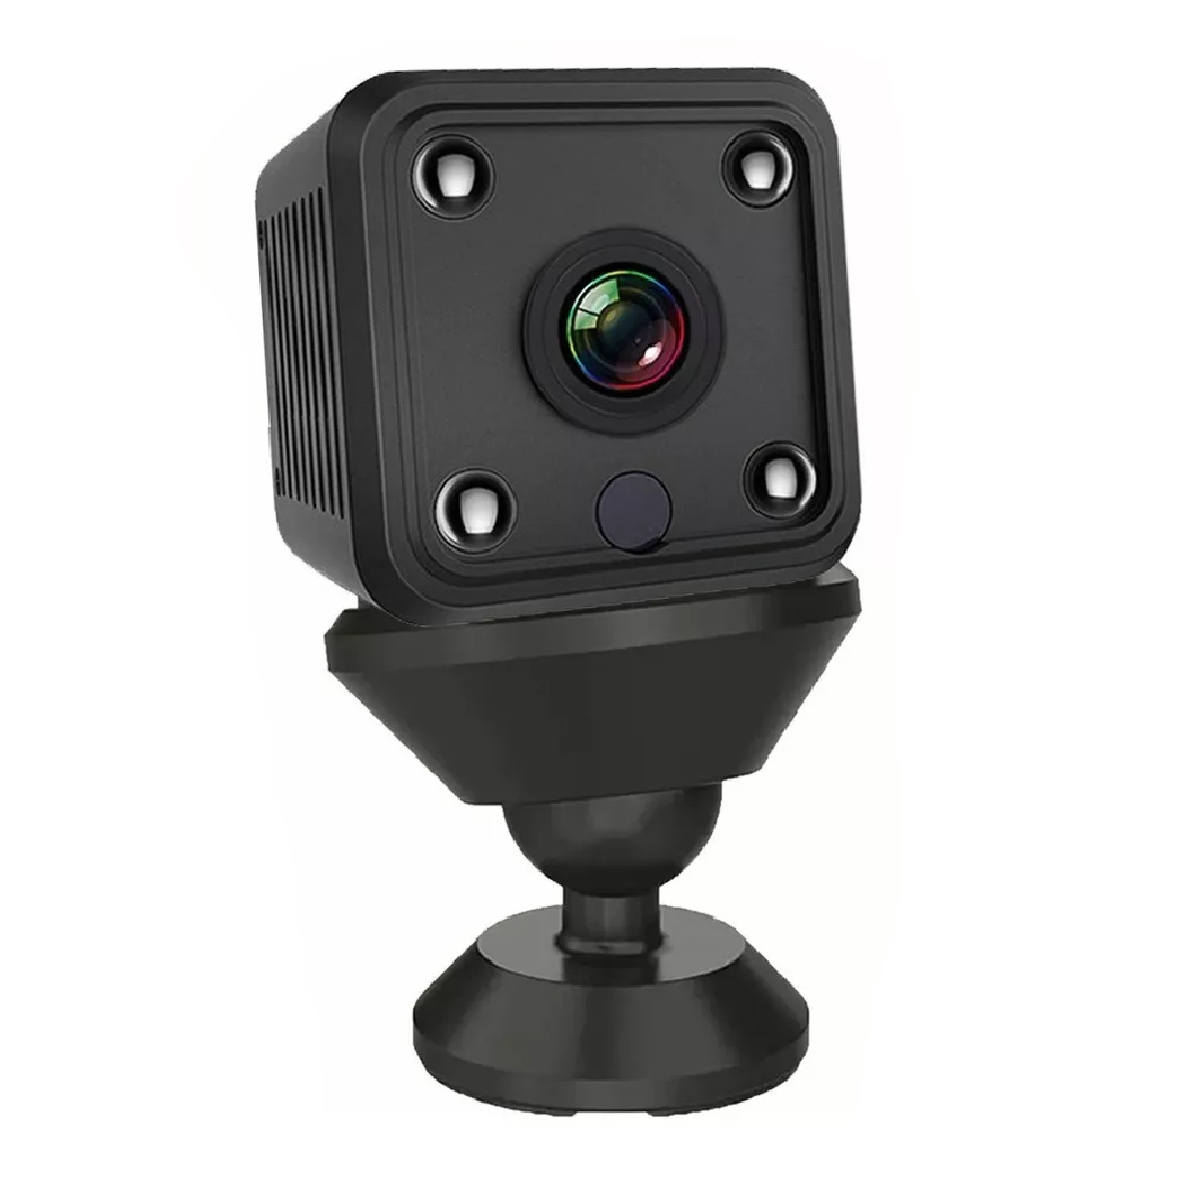 Mini cámara espía Cámara CCTV WiFi HD inalámbrica con visión nocturna y  detector, cámara de videovigilancia de seguridad inalámbrica para bebés Ca  oculto interior / exterior